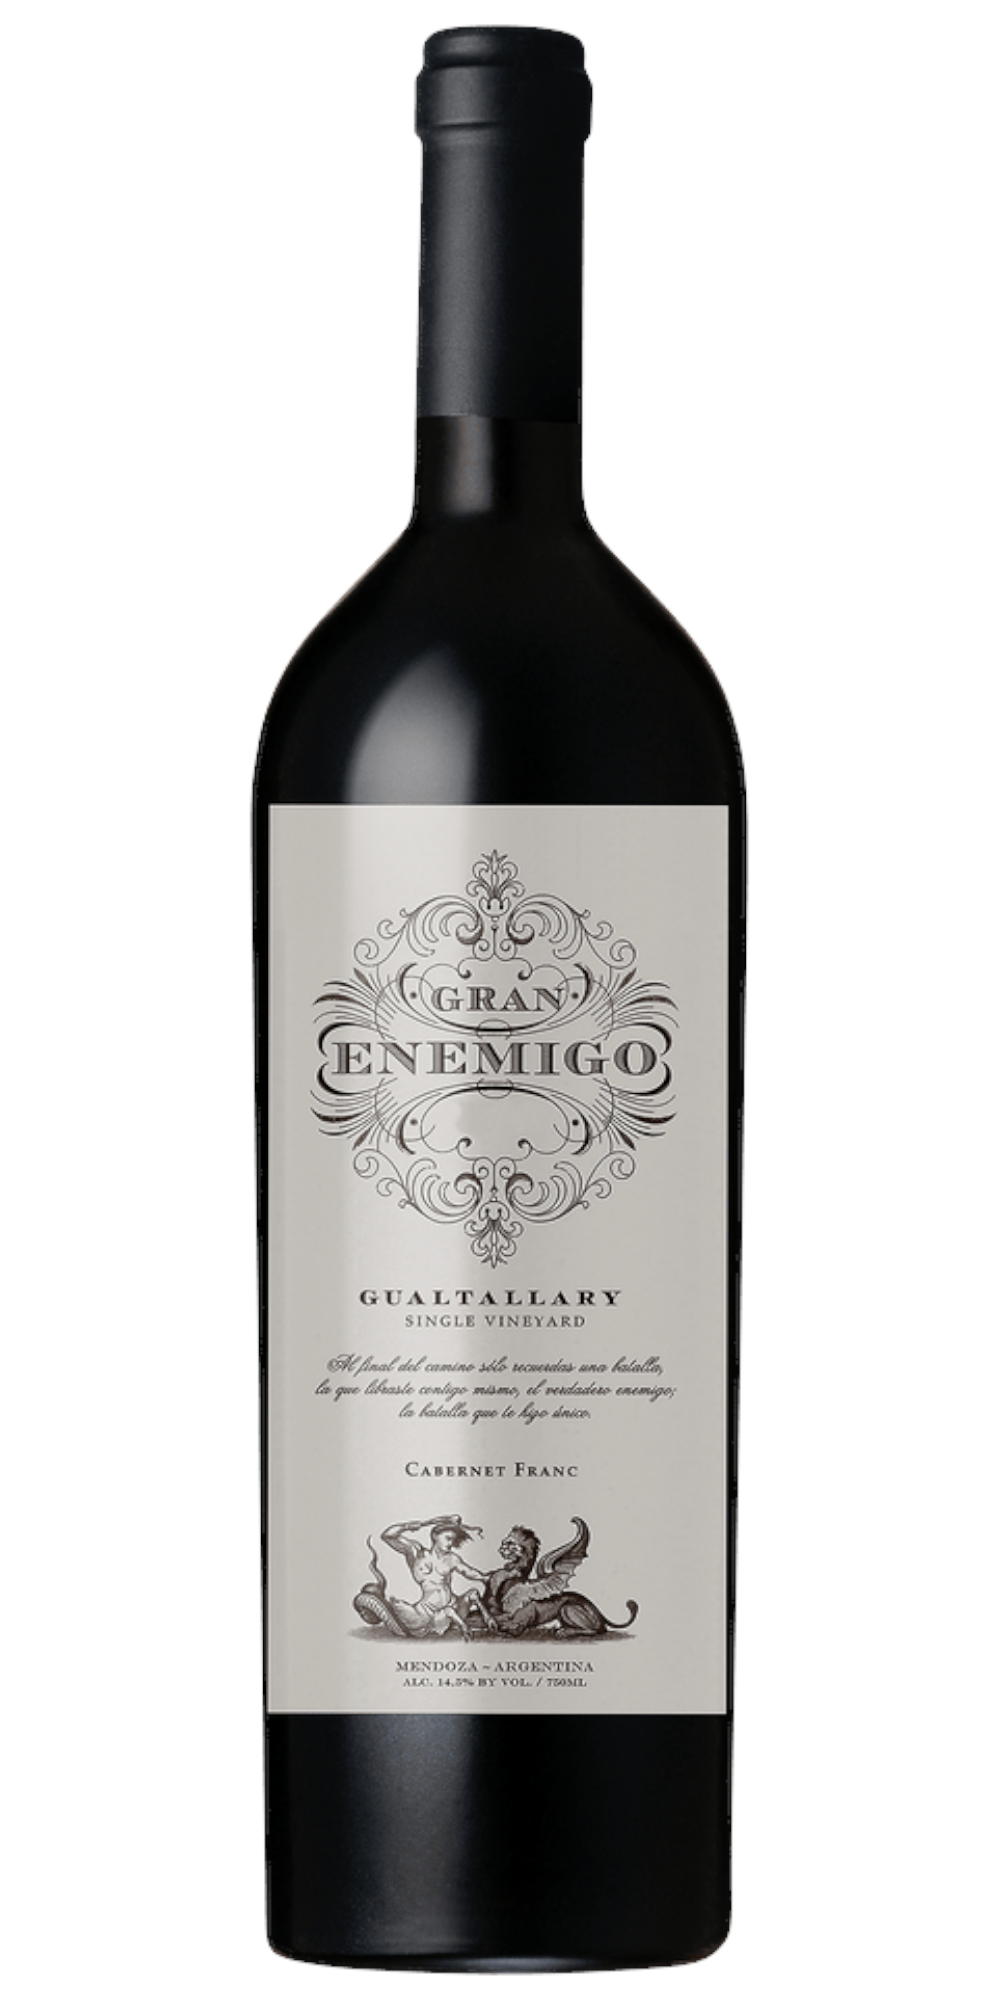 El Enemigo - Gran Enemigo Single Vineyard Gualtallary 2019